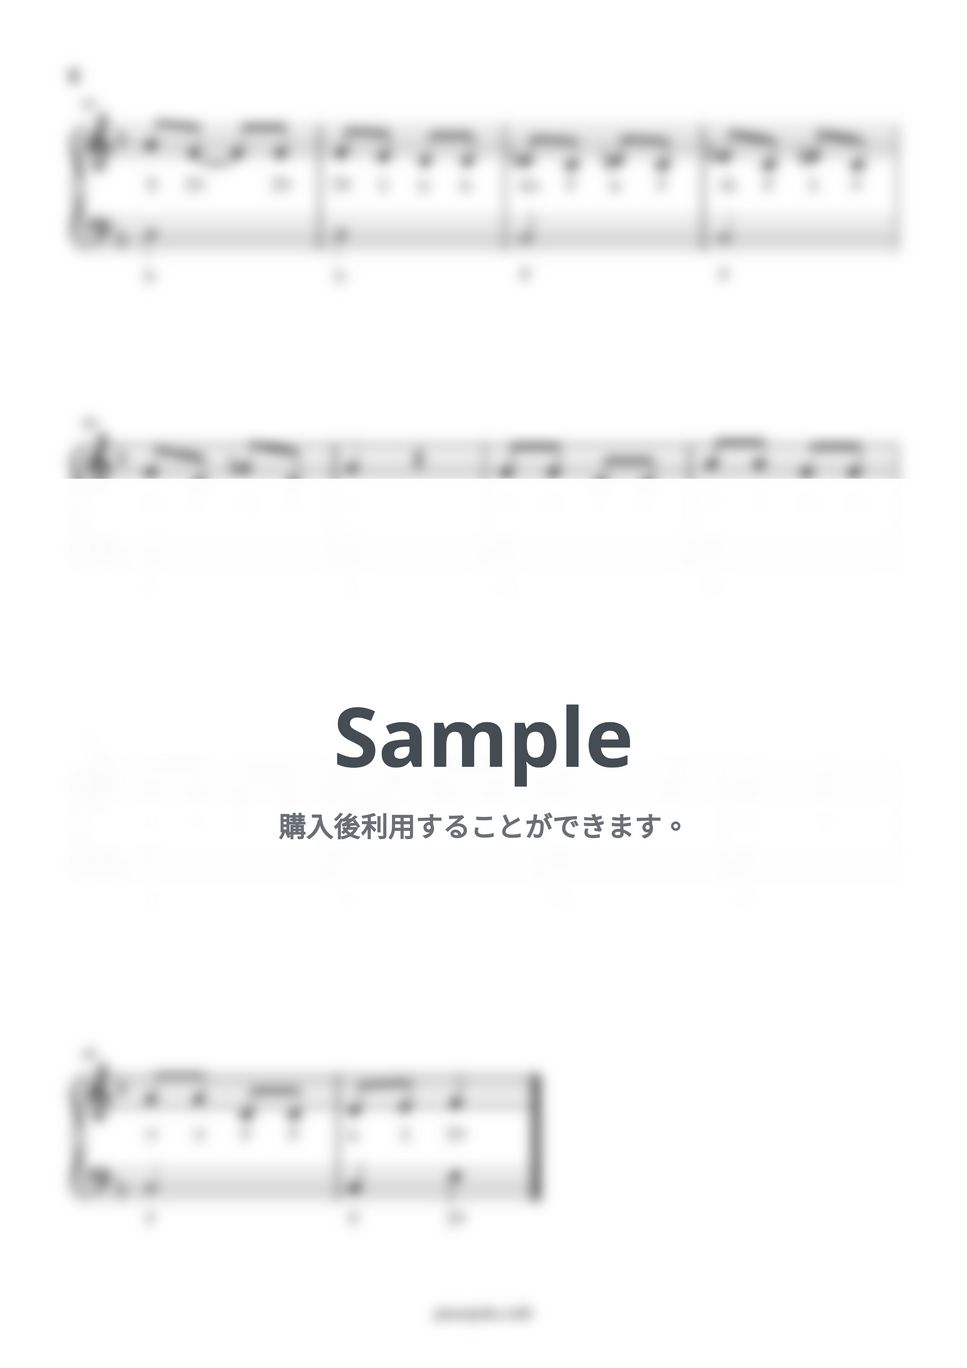 きのこ (ドレミ付き/簡単楽譜) by ピアノ塾